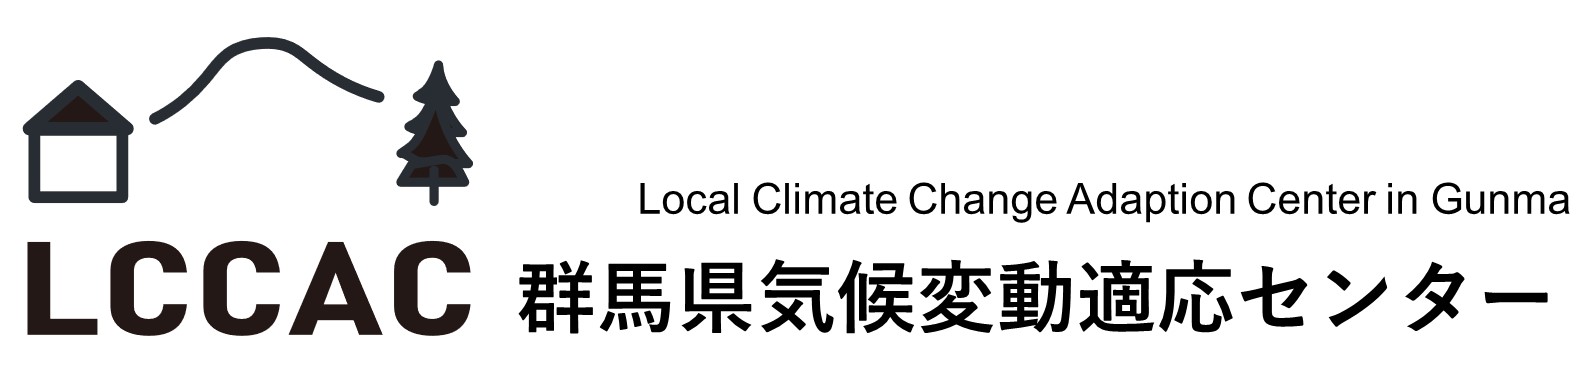 群馬県気候変動適応センターのタイトル画像